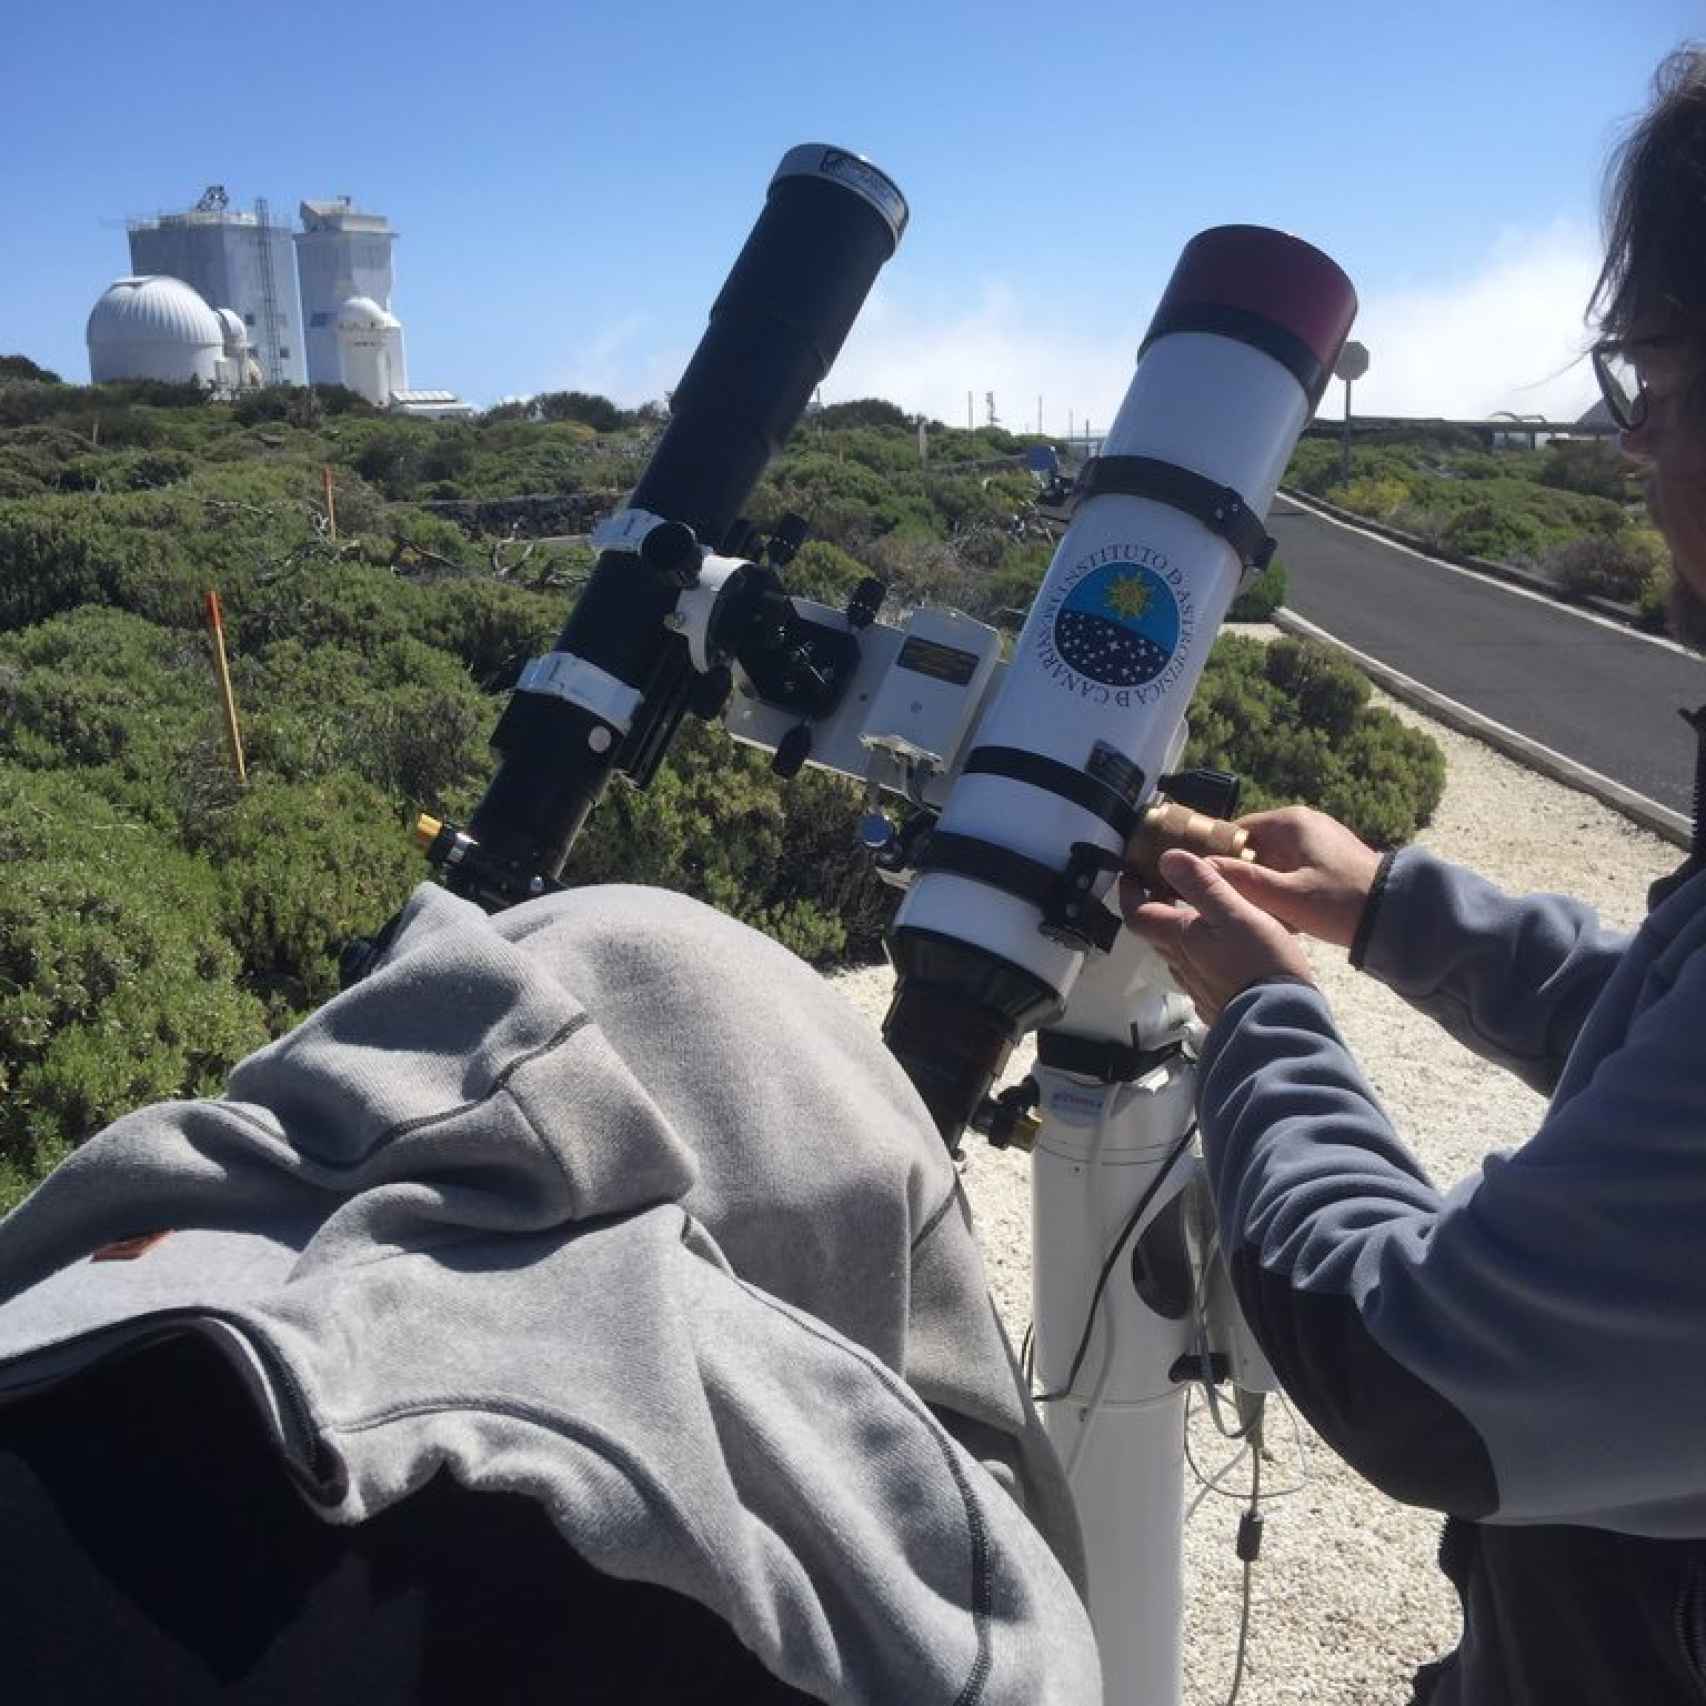 Aficionados calibran sus telescopios en el Teide, en Tenerife.